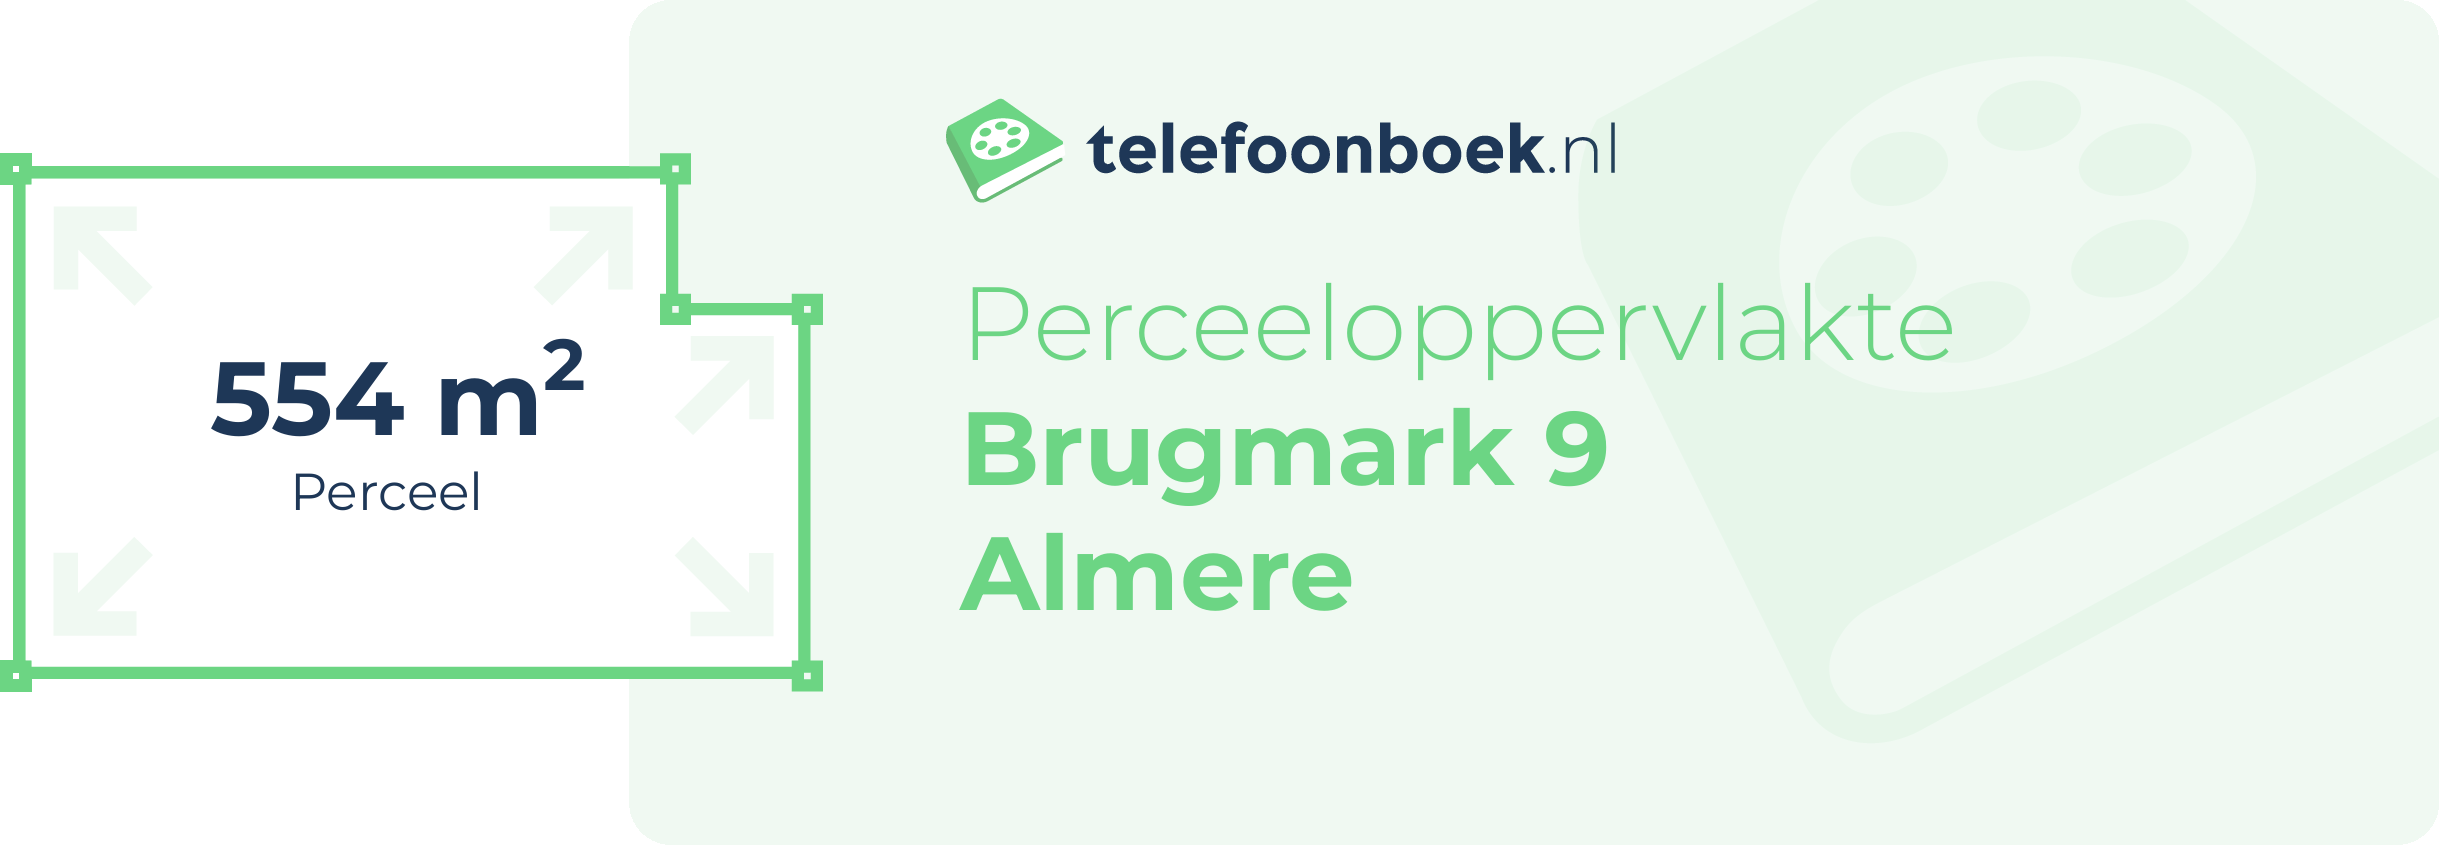 Perceeloppervlakte Brugmark 9 Almere